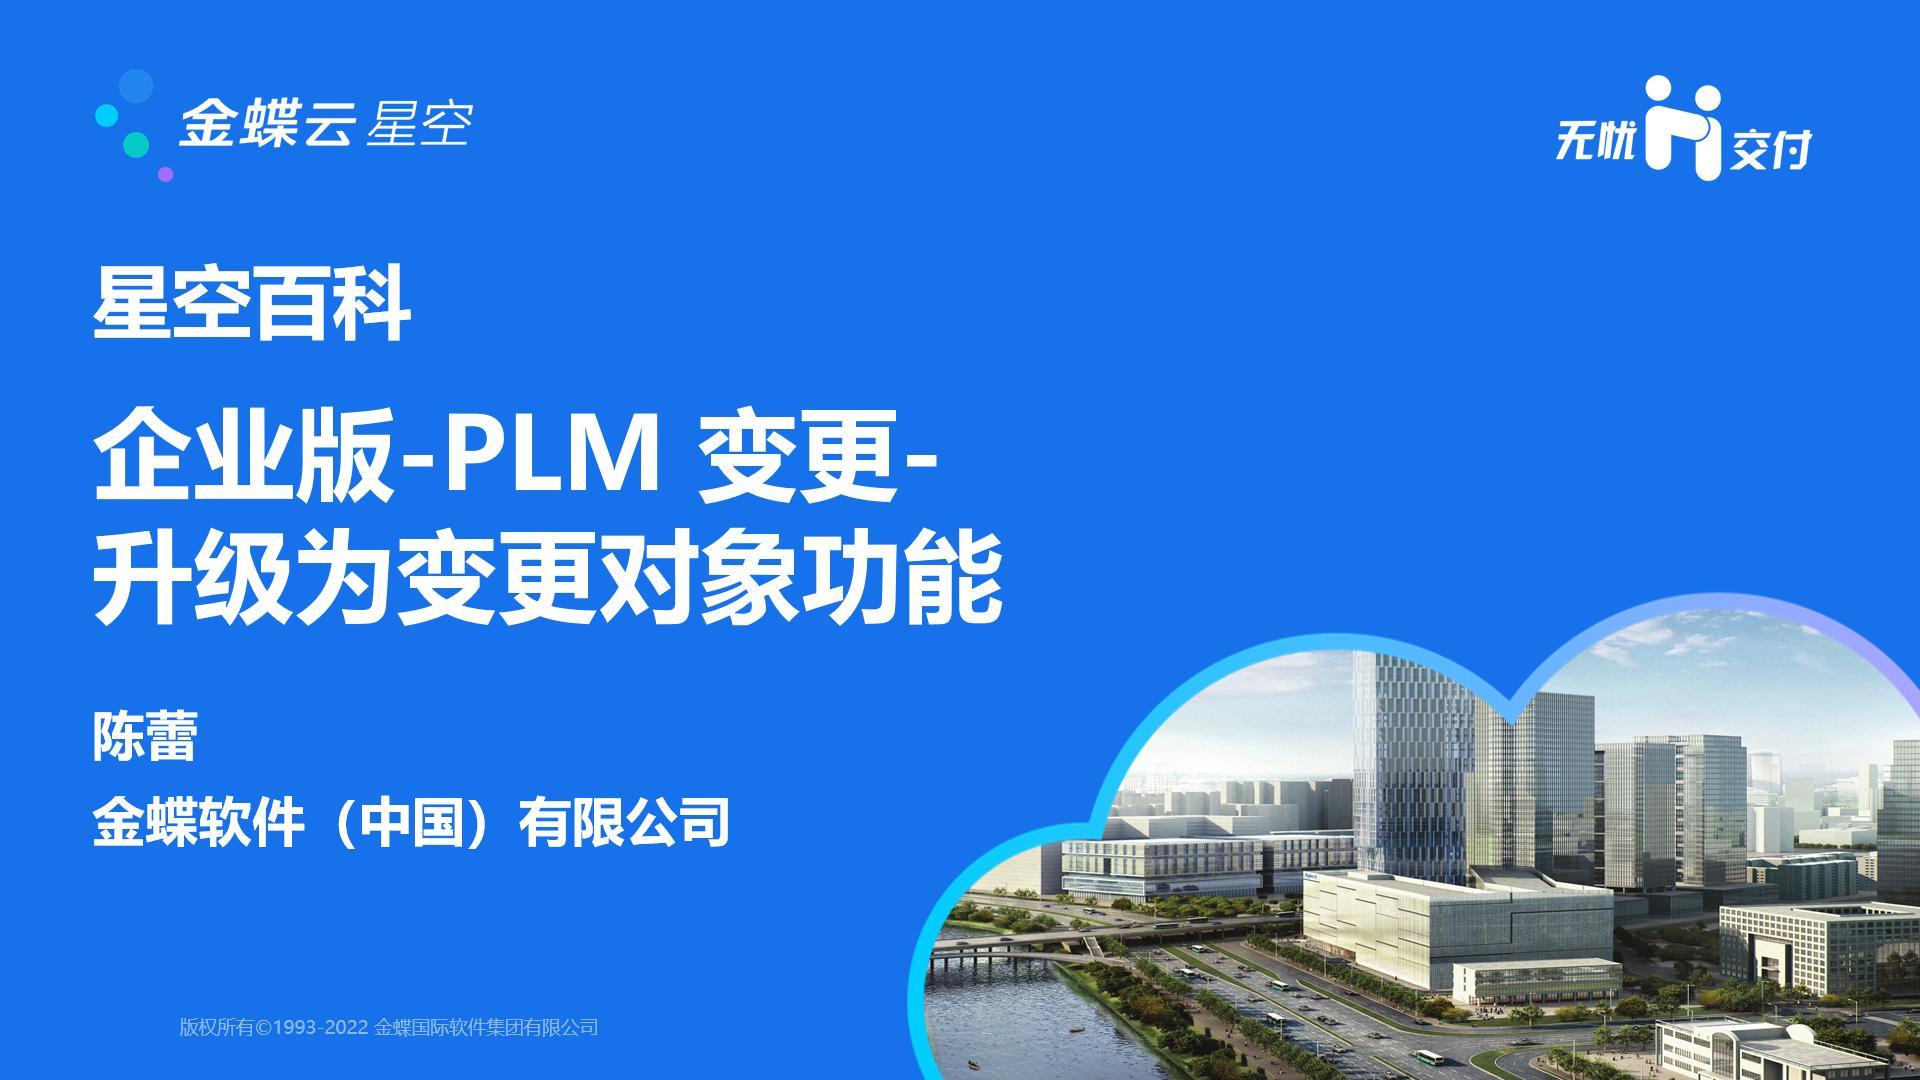 金蝶云社区-BKPLM20231203 企业版-PLM变更-升级为变更对象功能